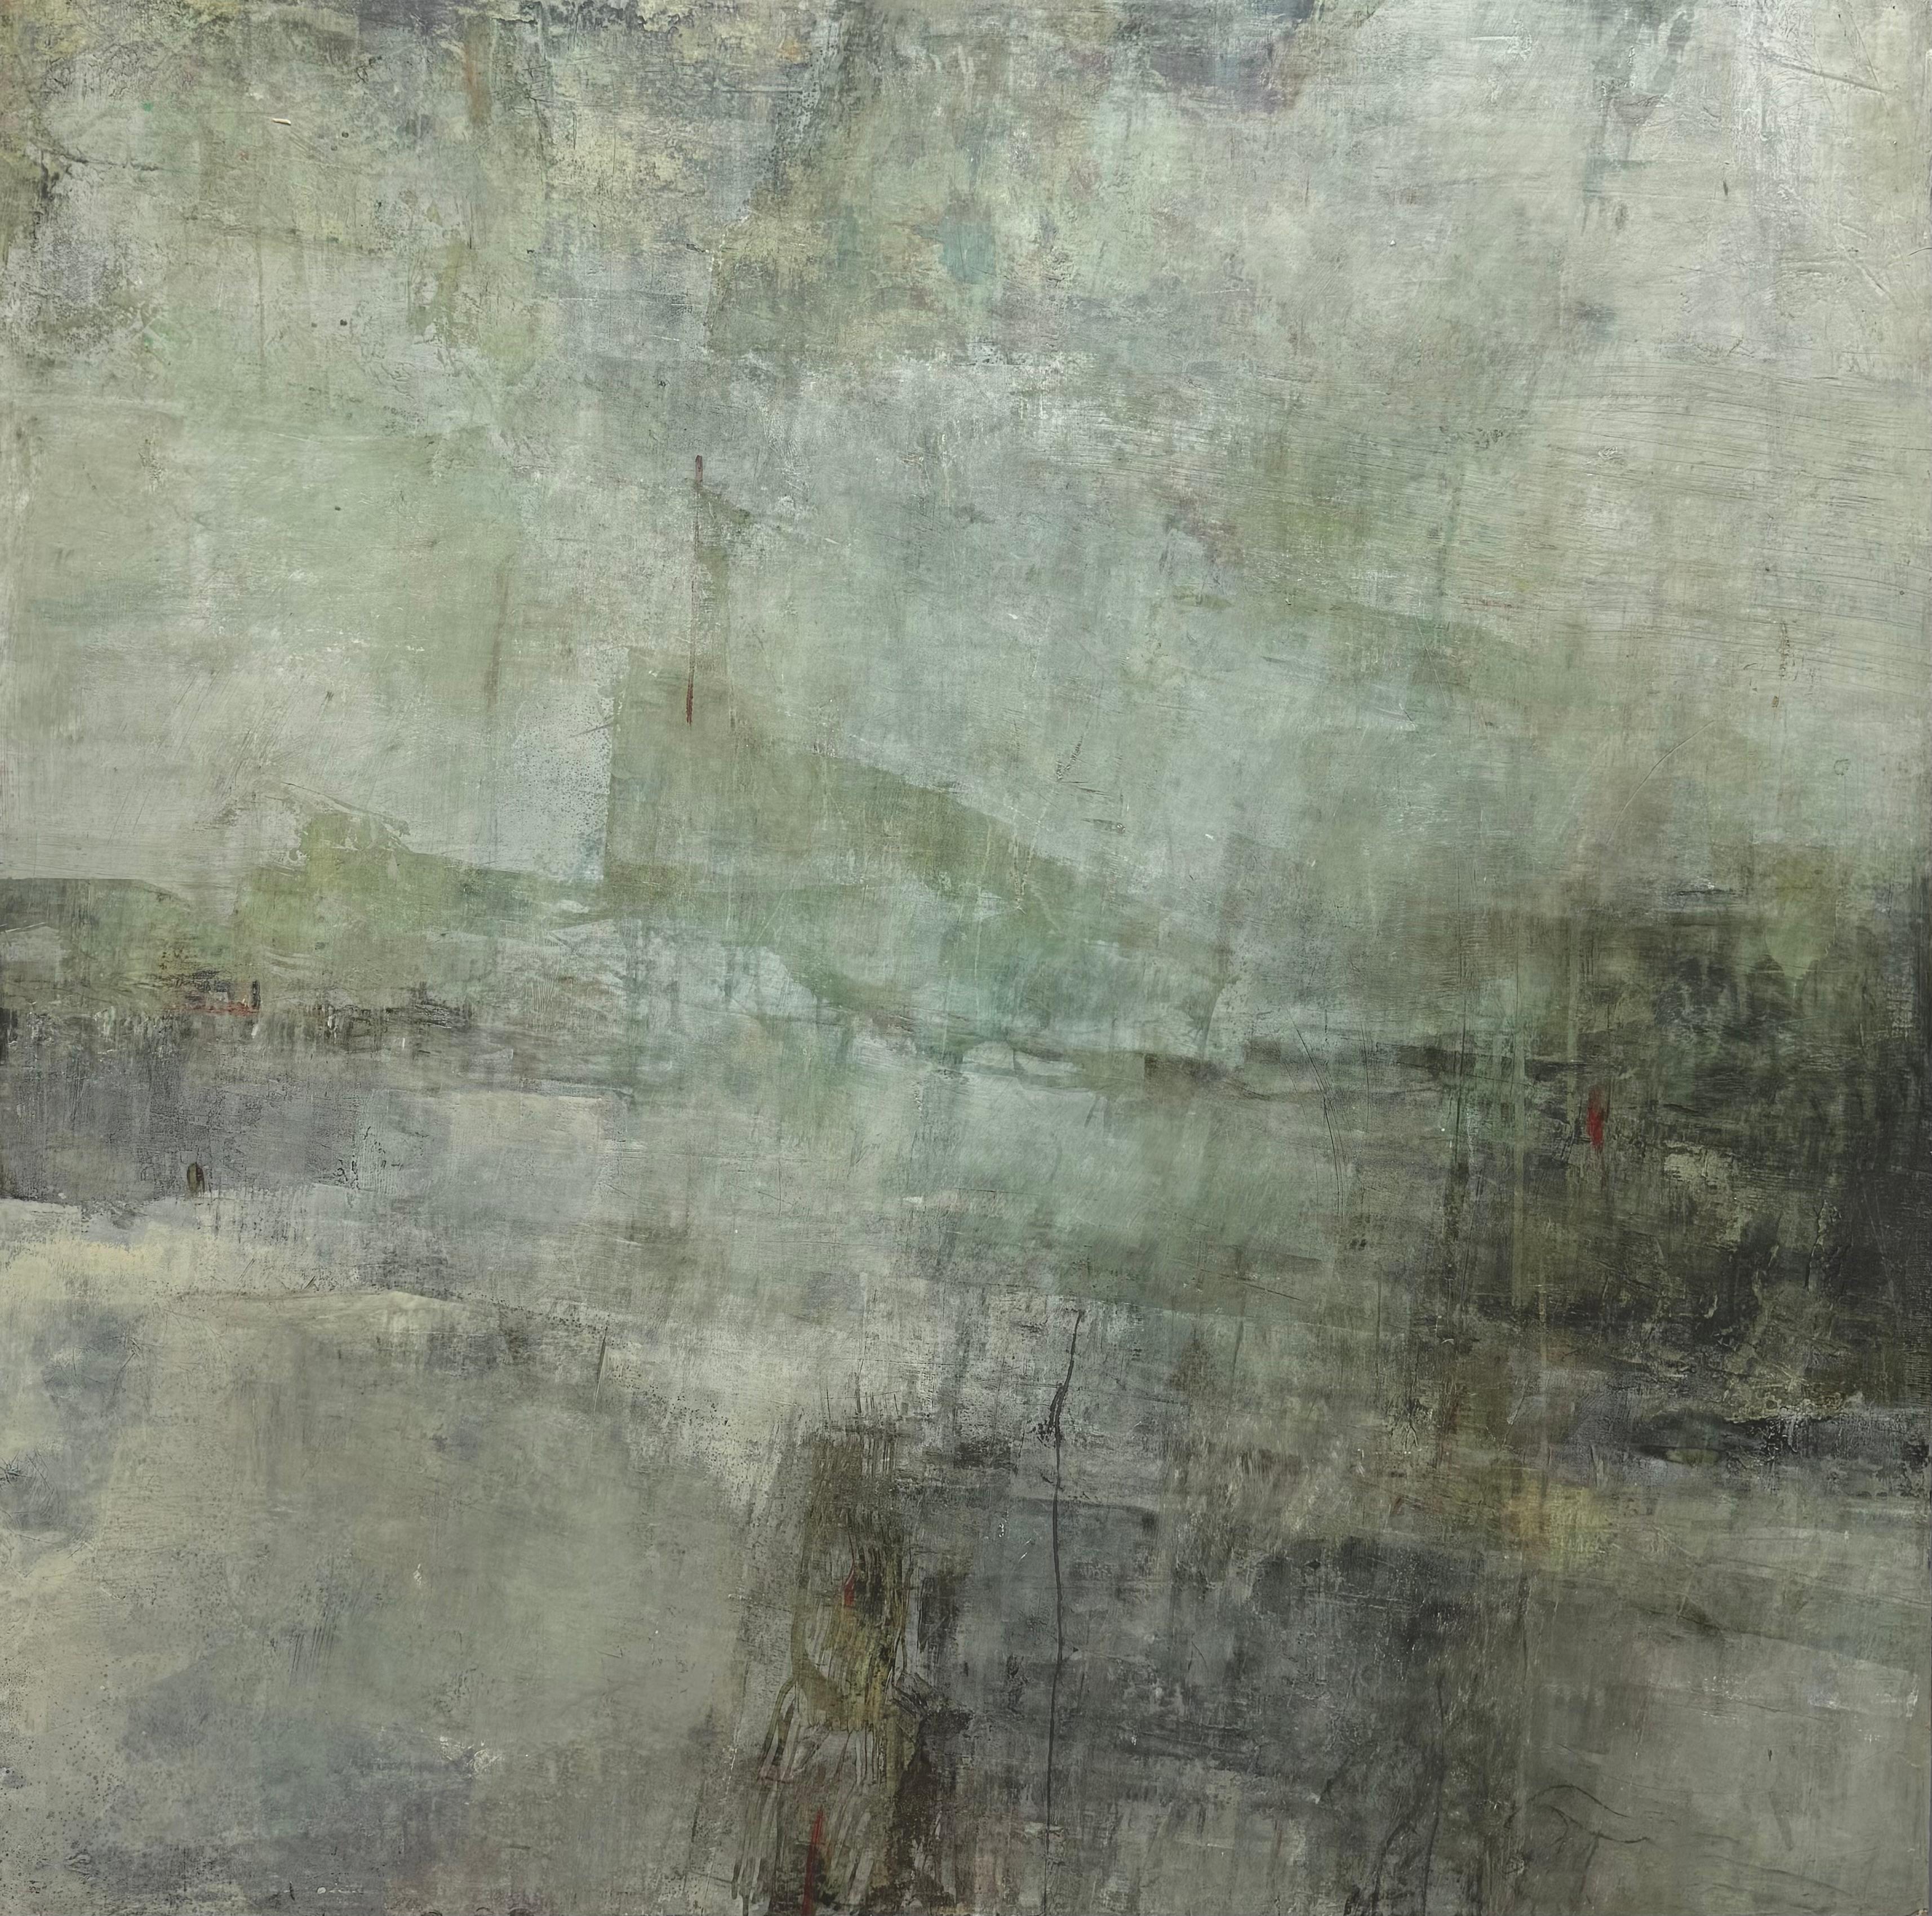 Abstract Painting Rebecca Crowell - Journée de l'atmosphère